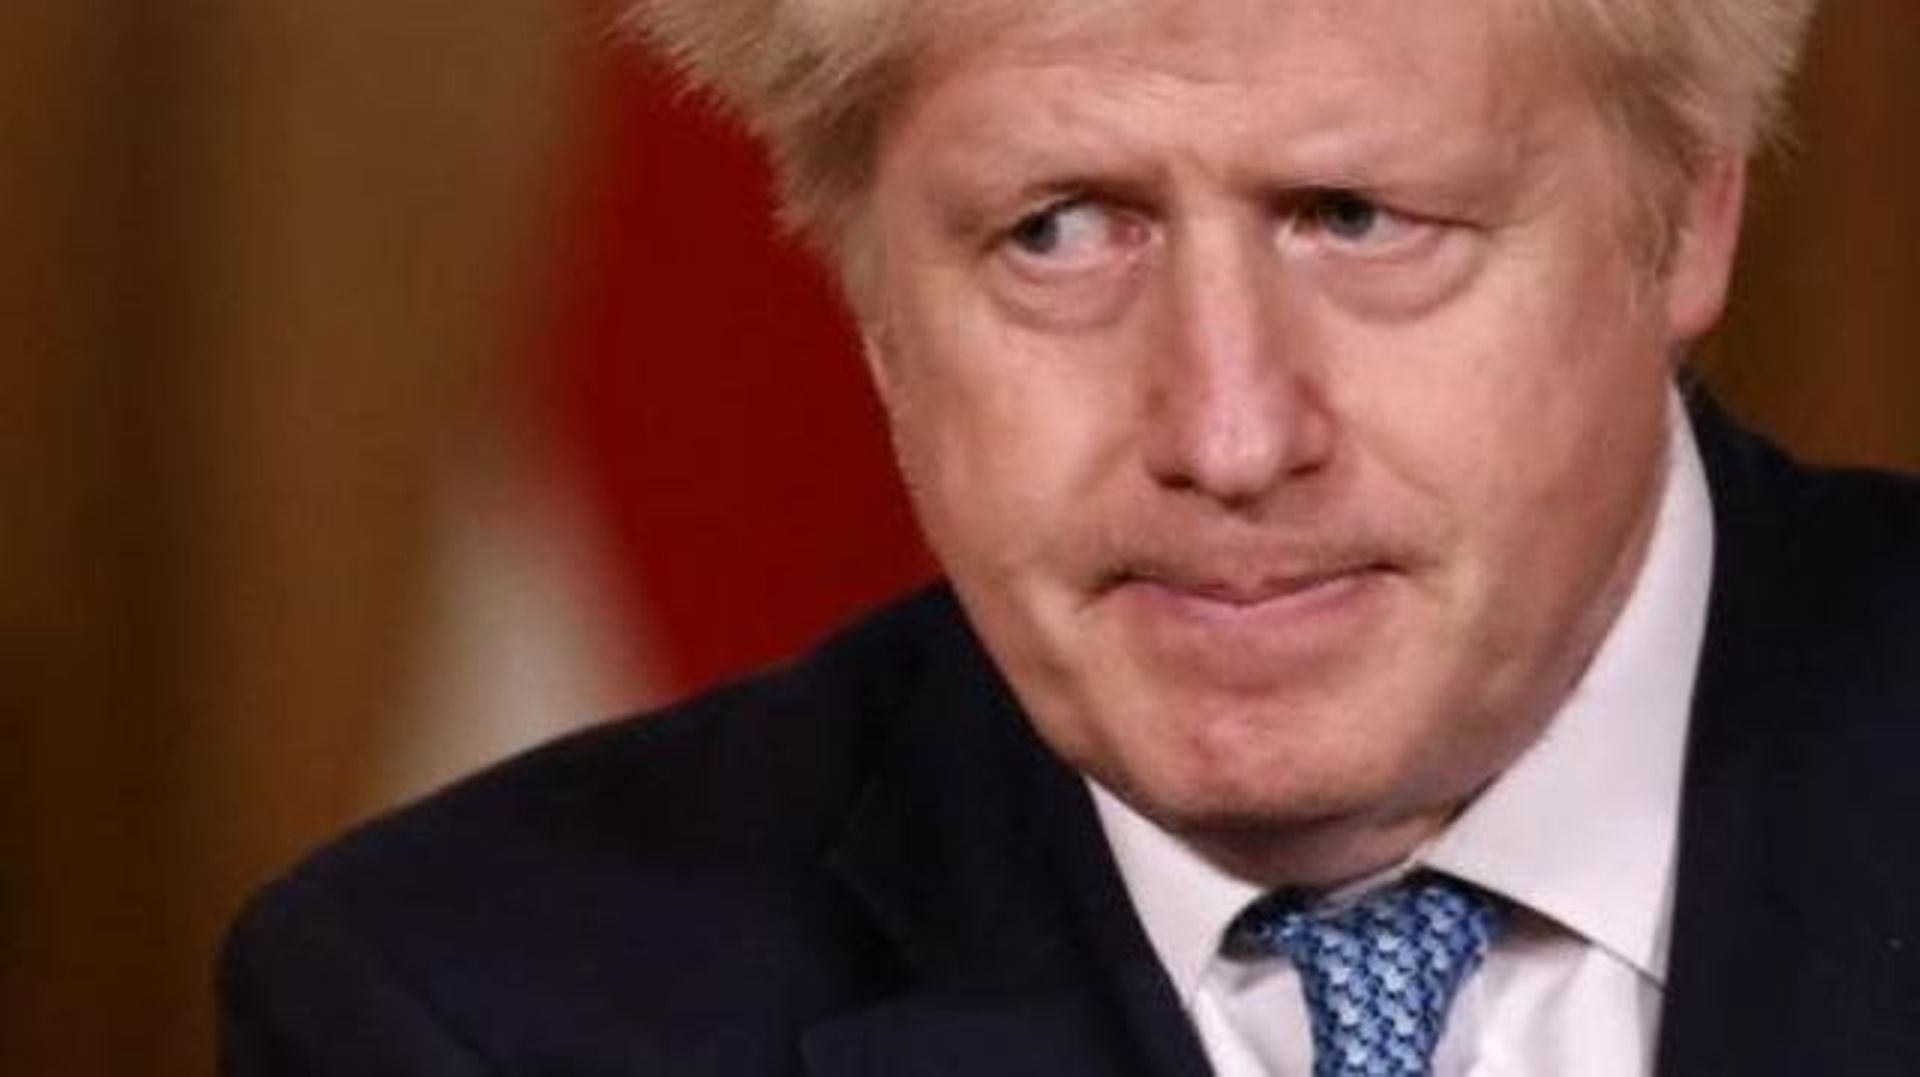 Les approvisionnements du Royaume-Uni sont "robustes", selon Boris Johnson